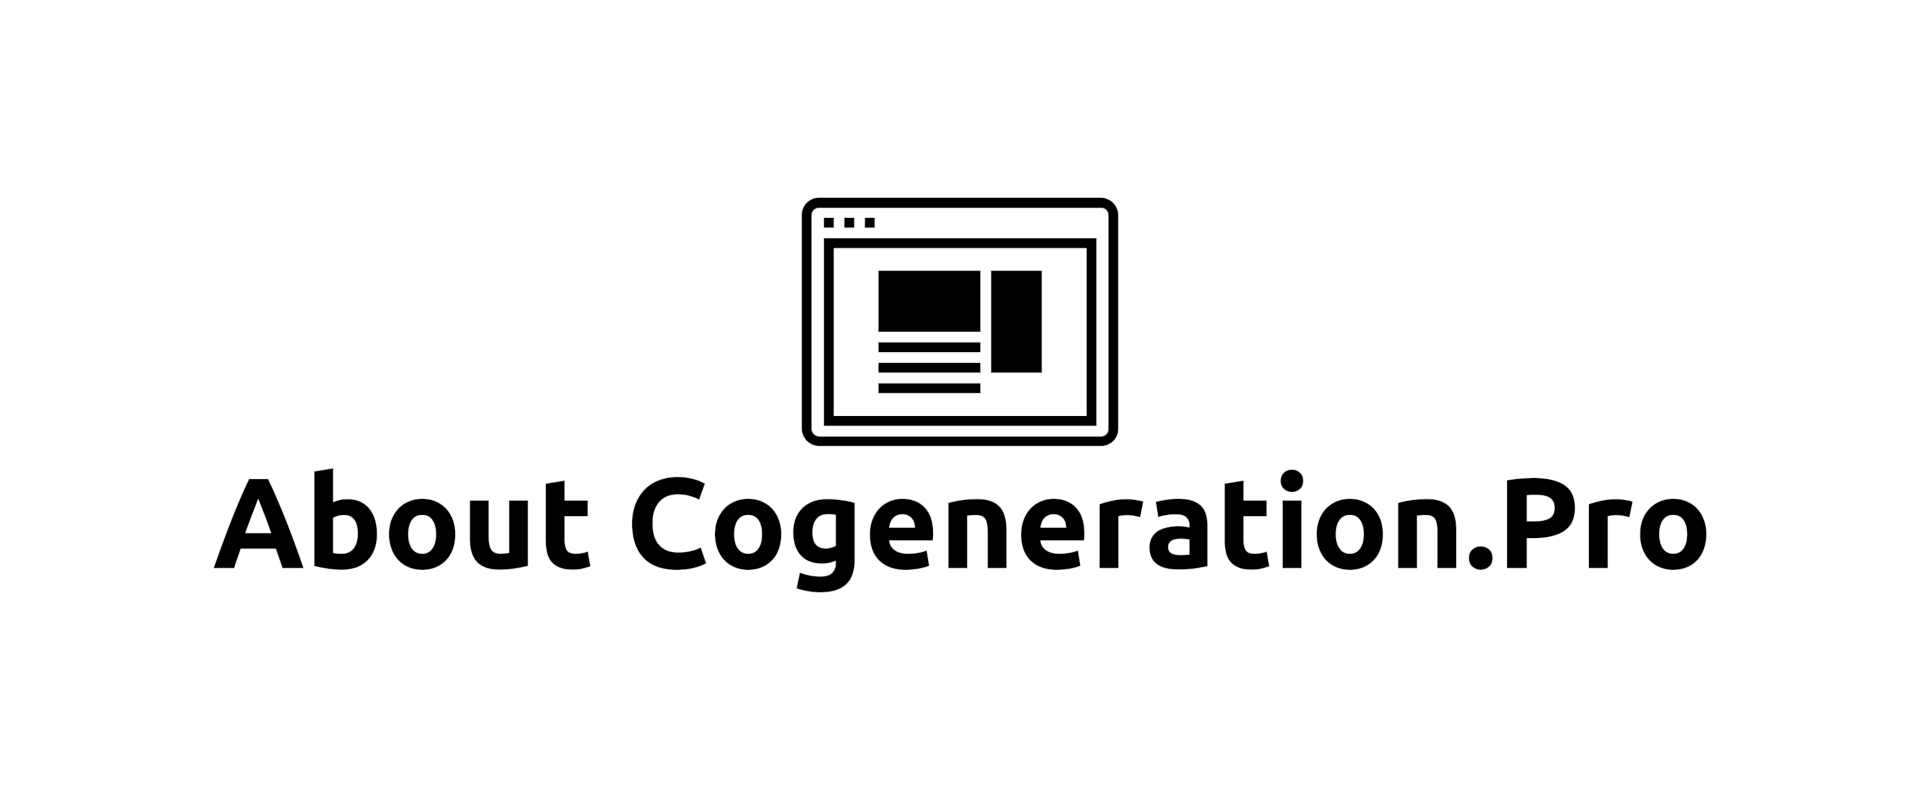 About Cogeneration.Pro